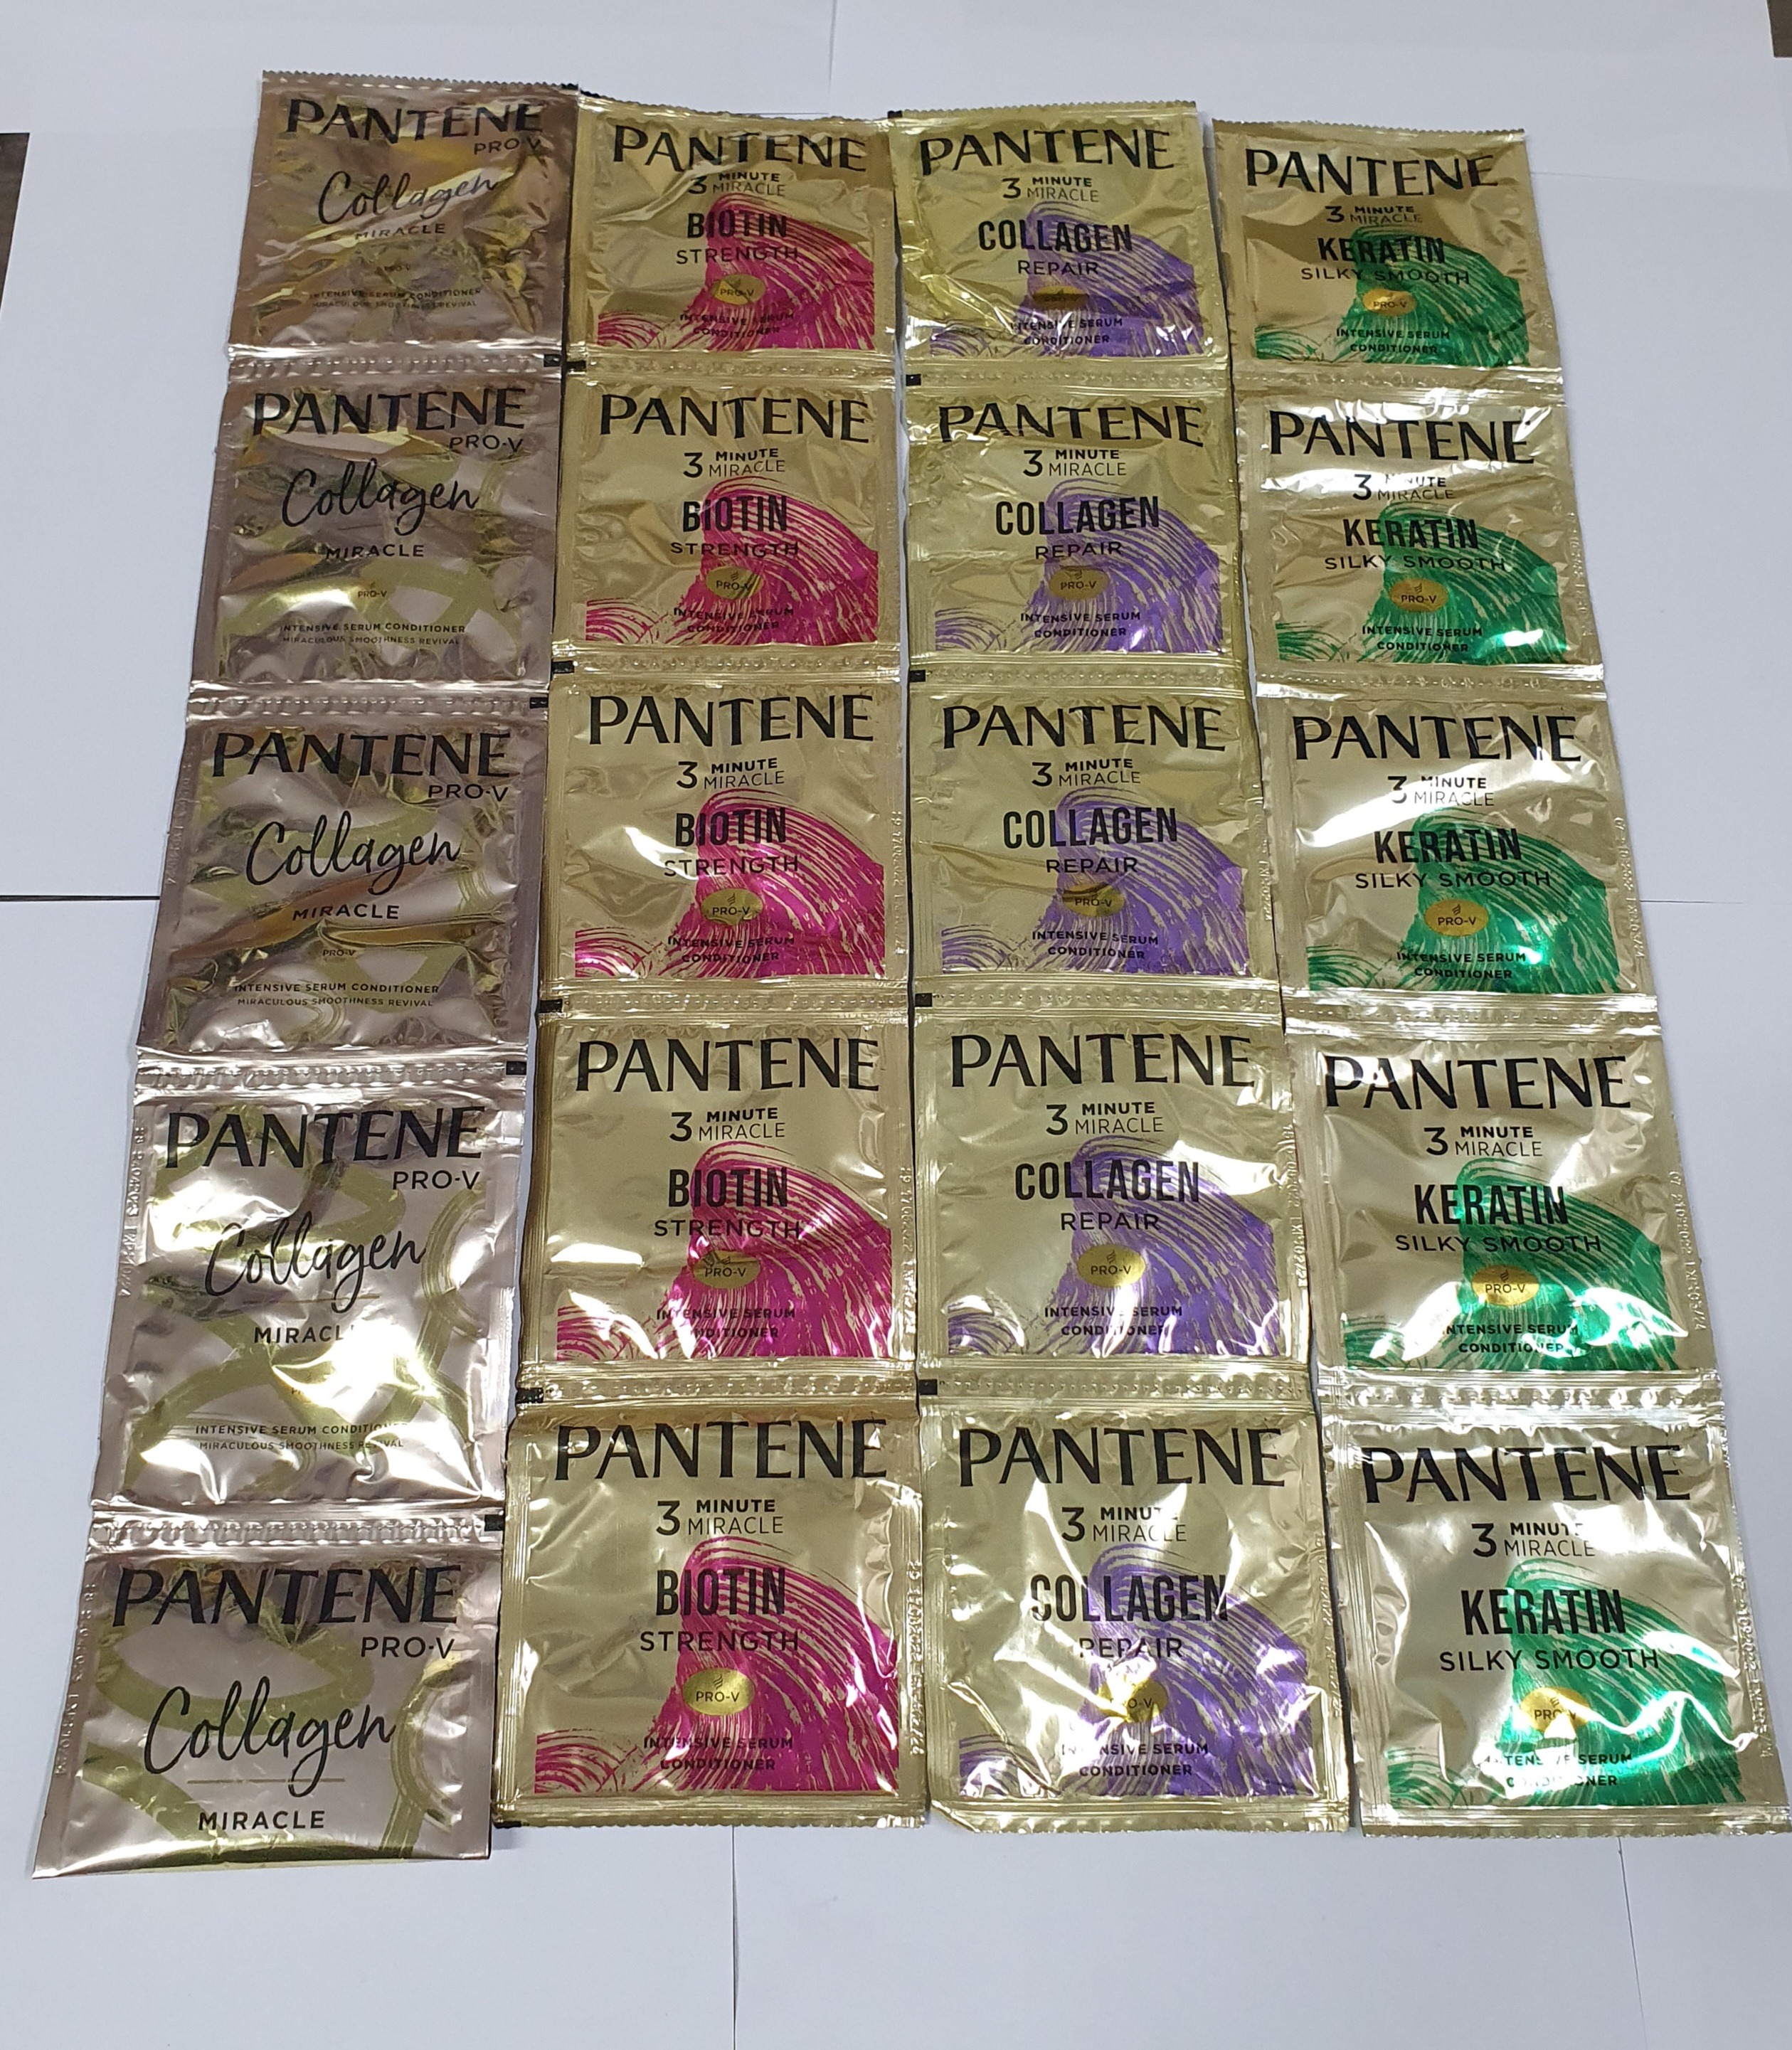 20 PCS Pantene Blotin Strength (13 ml) ASSORTED